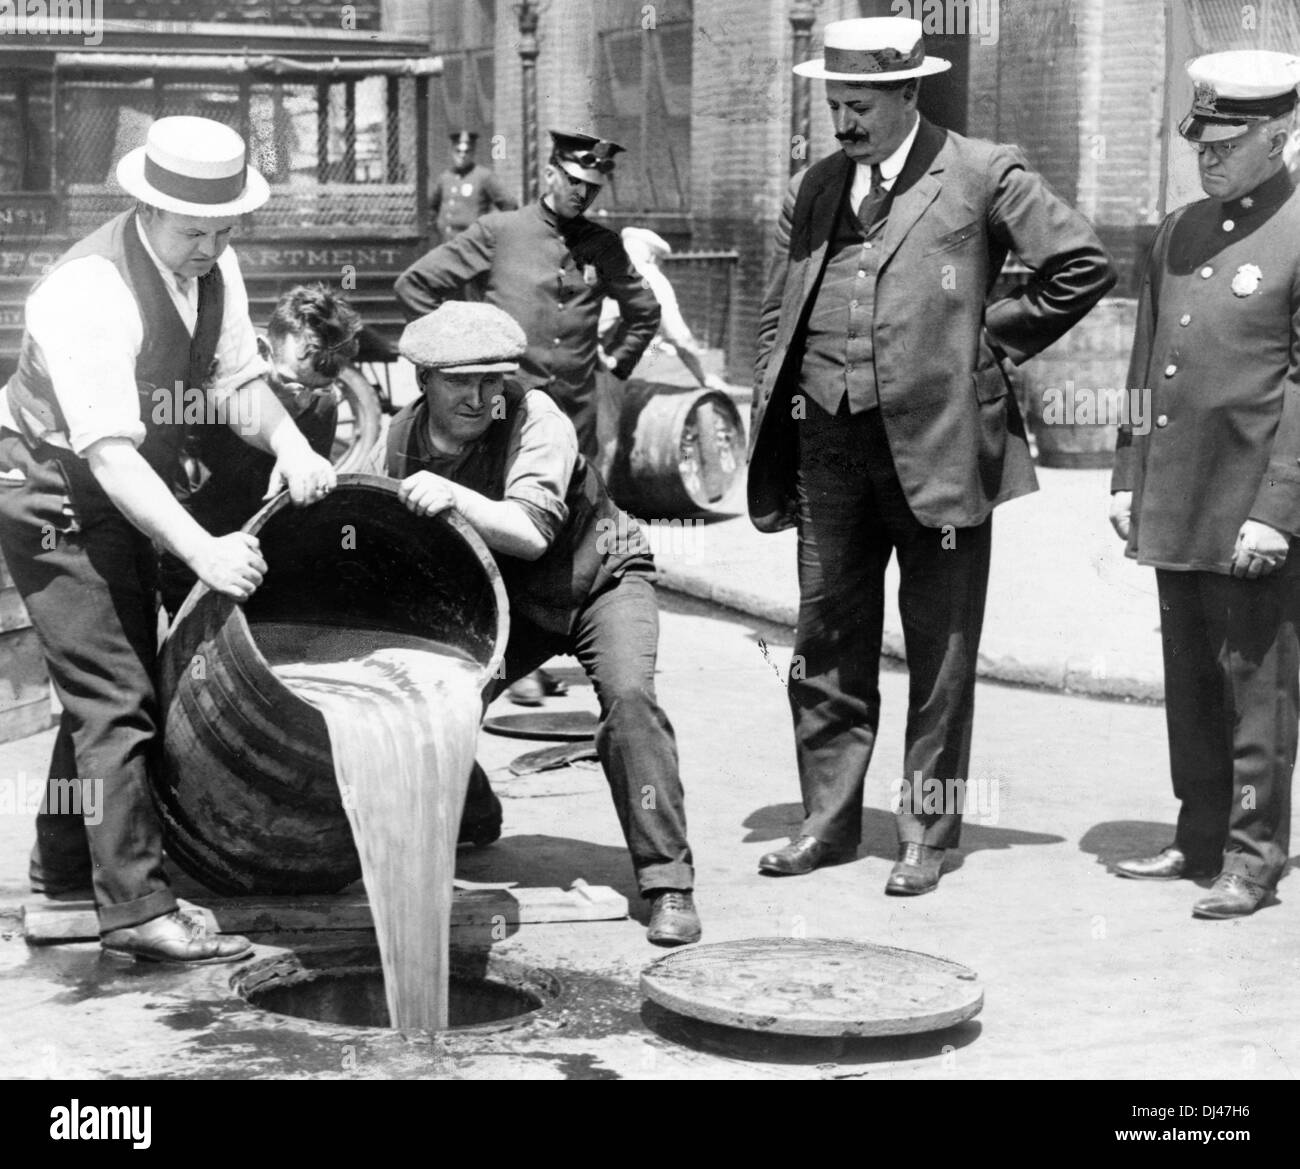 Zerstörung von Alkohol während der Zeit der Prohibition, Amerika, Gießen Sie Agenten Schnaps in die Kanalisation nach einer Razzia Stockfoto